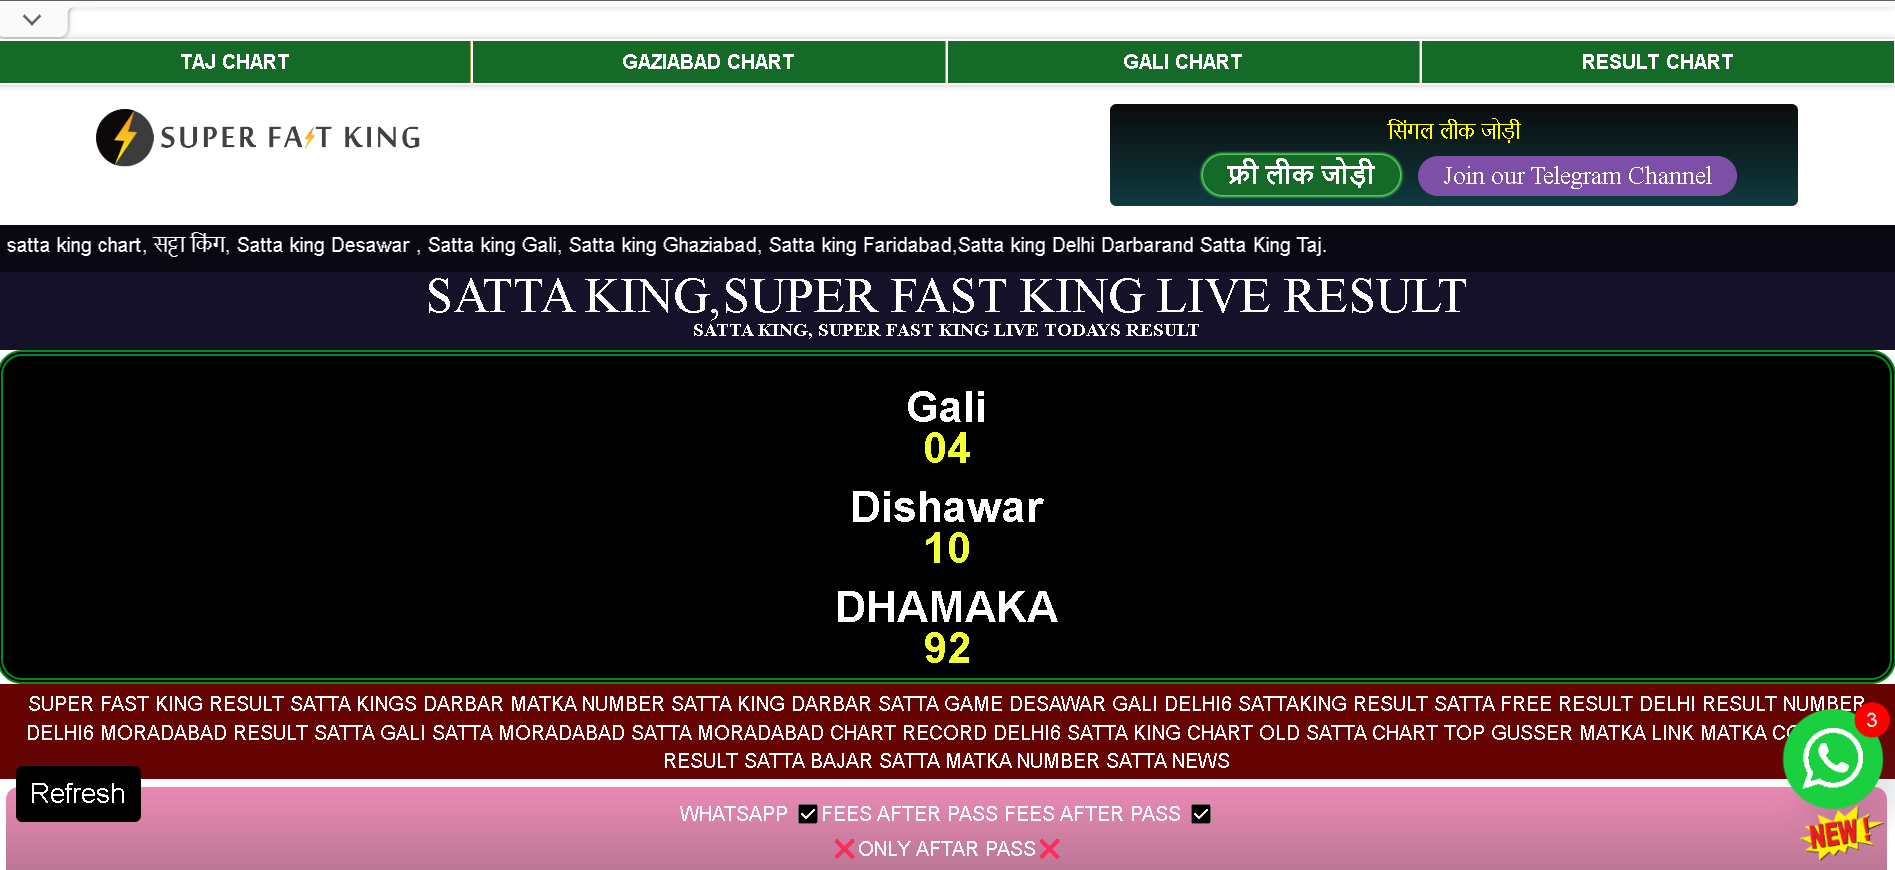 GAZIABAD CHART GALI CHART RESULT CHART

[RURENIERE Bl]

Ie 2 =
¢ pagel rl PEER UTI EE UhIRE ITN]

 

satta kang chart, d¢T bil, Satta king Desawar . Satta king Gali, Satta kong Ghaziabad, Satta king Fandabad. Satta king Delhi Darbarand Satta King Taj

SATTA KING,SUPER FAST KING LIVE RESULT

SATTARKING, SUPER FAST KING LIVE TODAYS RESULT

cl
04

Dishawar
10

DHAMAKA
LY]

= >
SUPER FAST KING RESULT SATTA KINGS DARBAR MATKA NUMBER SATTA KING DARBAR SATTA GAME DESAWAR GALI DELHI6 SATTAKING RESULT SATTA FREE RESULT DELHI RESULT NUMBER
DELHIE MORADABAD RESULT SATTA GALI SATTA MORADABAD SATTA MORADABAD CHART RECORD DELHI6 SATTA KING CHART OLD SATTA CHART TOP GUSSER MATKA LINK MATKA Cg
RESULT SATTA BAJAR SATTA MATKA NUMBER SATTA NEWS

REE